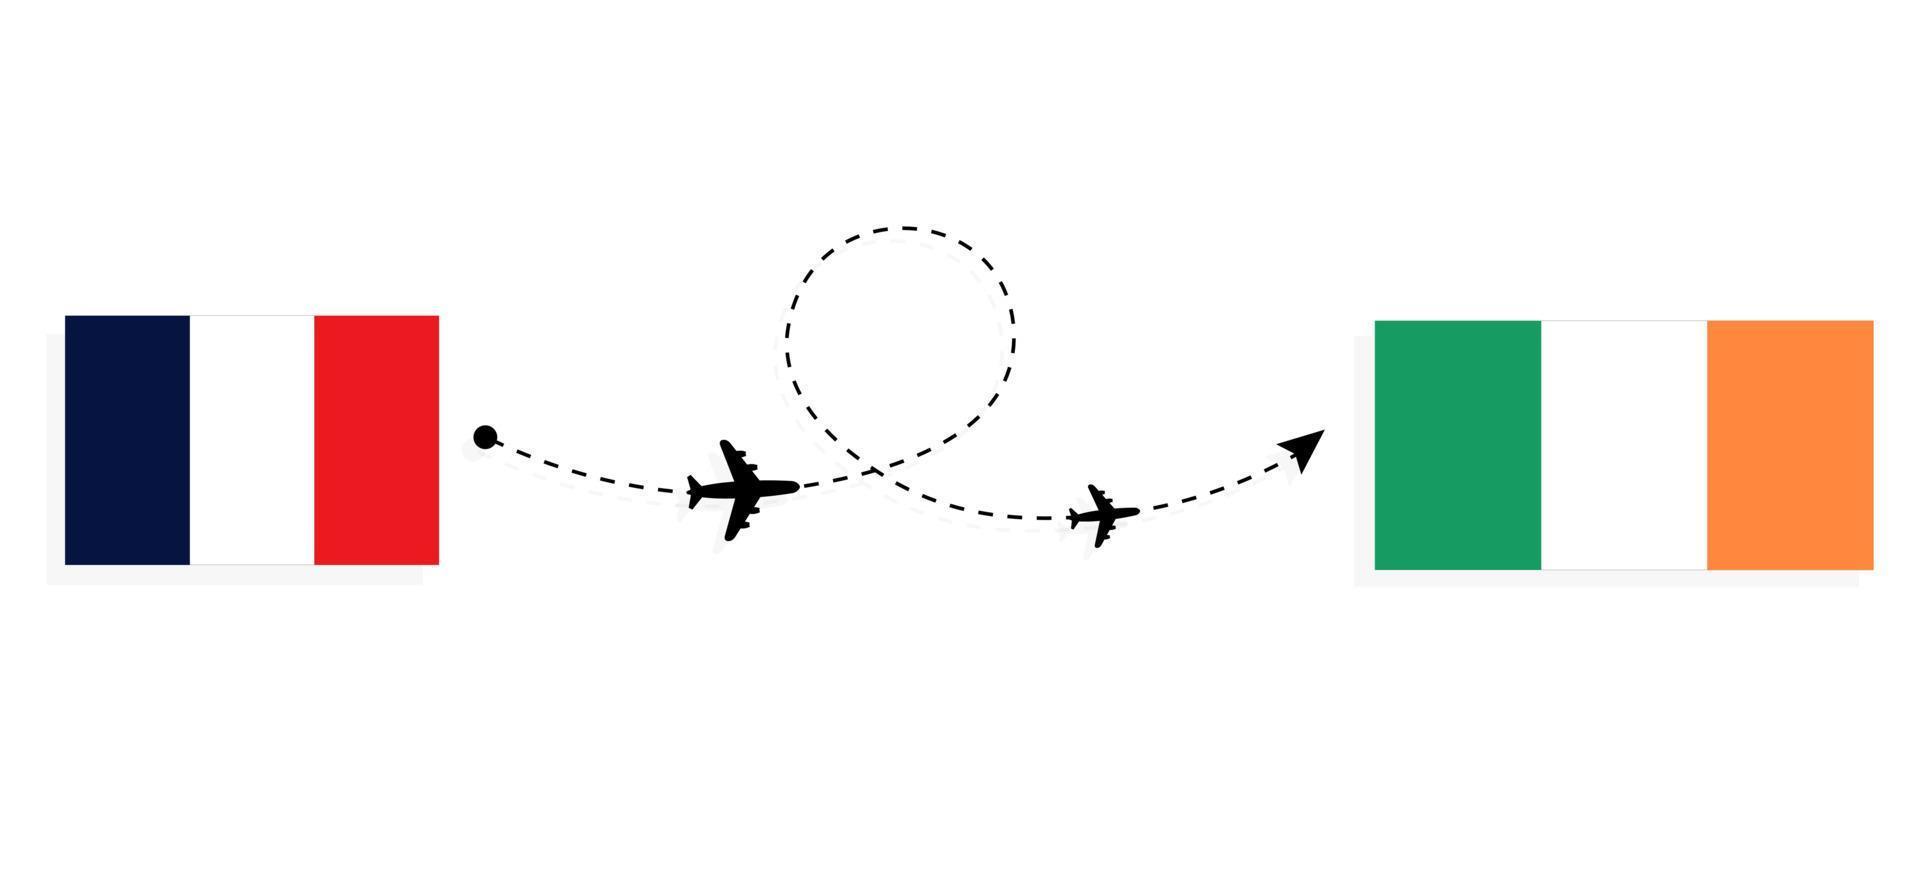 flyg och resor från Frankrike till Irland med passagerarflygplan vektor